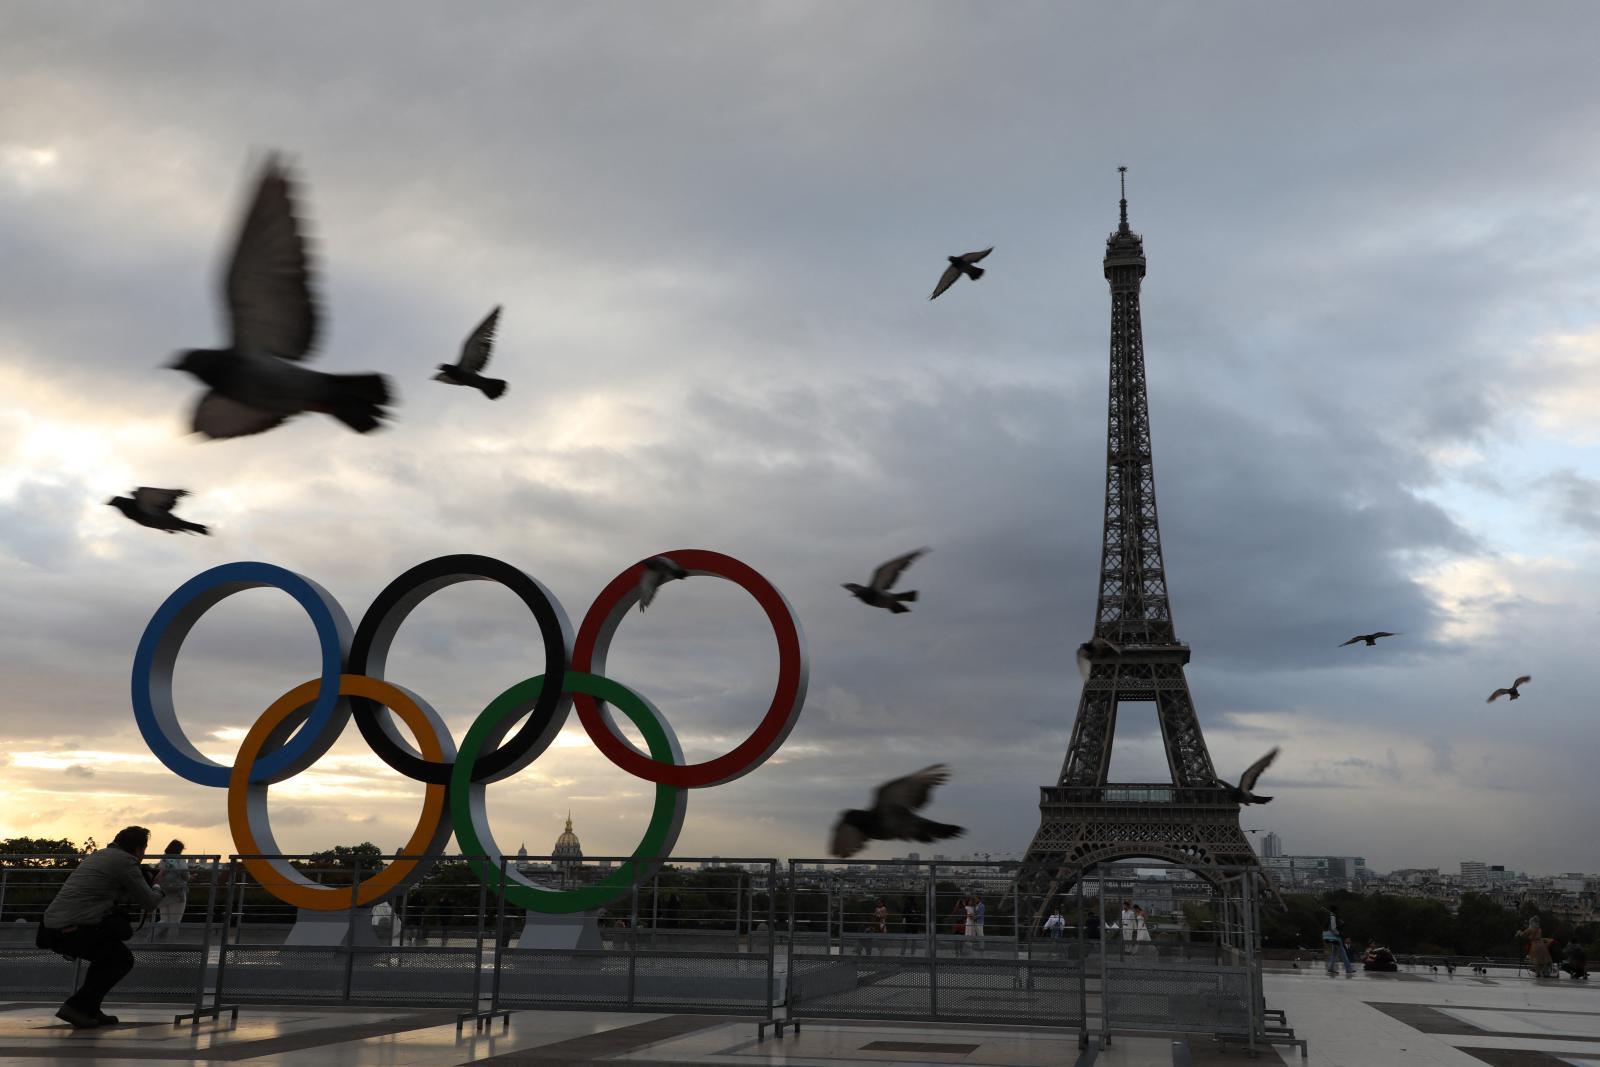 2024 年奥运会，“拯救世界”和减少“温室气体”的体育盛会：PPTVHD36